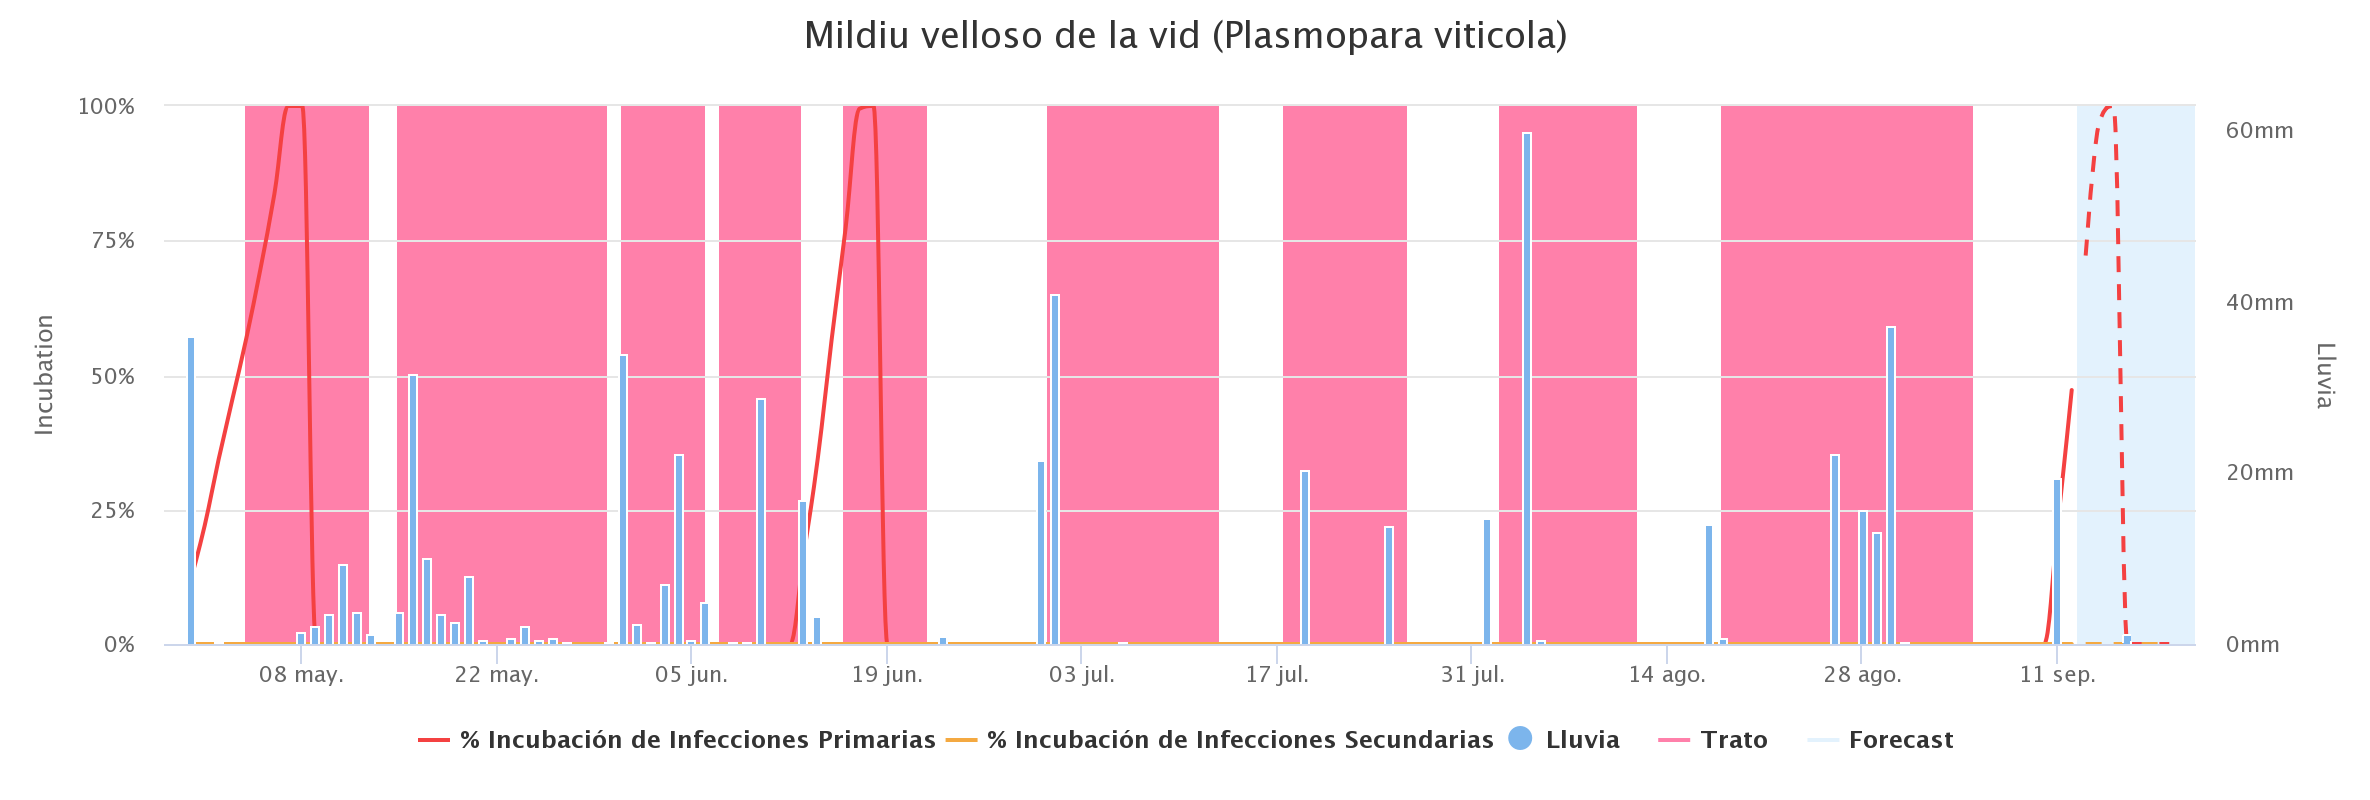 gráfico del modelo de defensa del Mildiu velloso de la vid (Plasmopara viticola) de la plataforma Agricolus